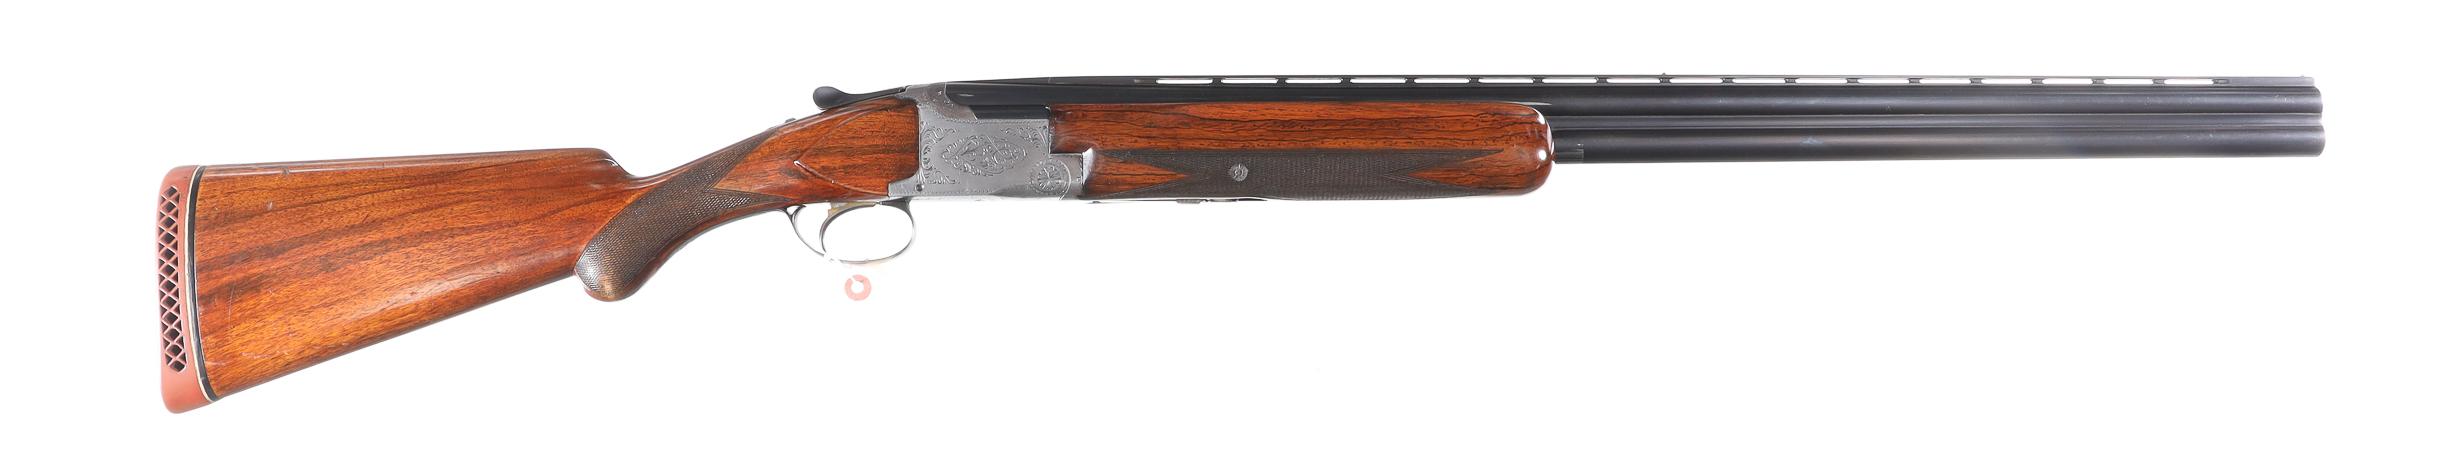 Browning Superposed O/U Shotgun 12ga